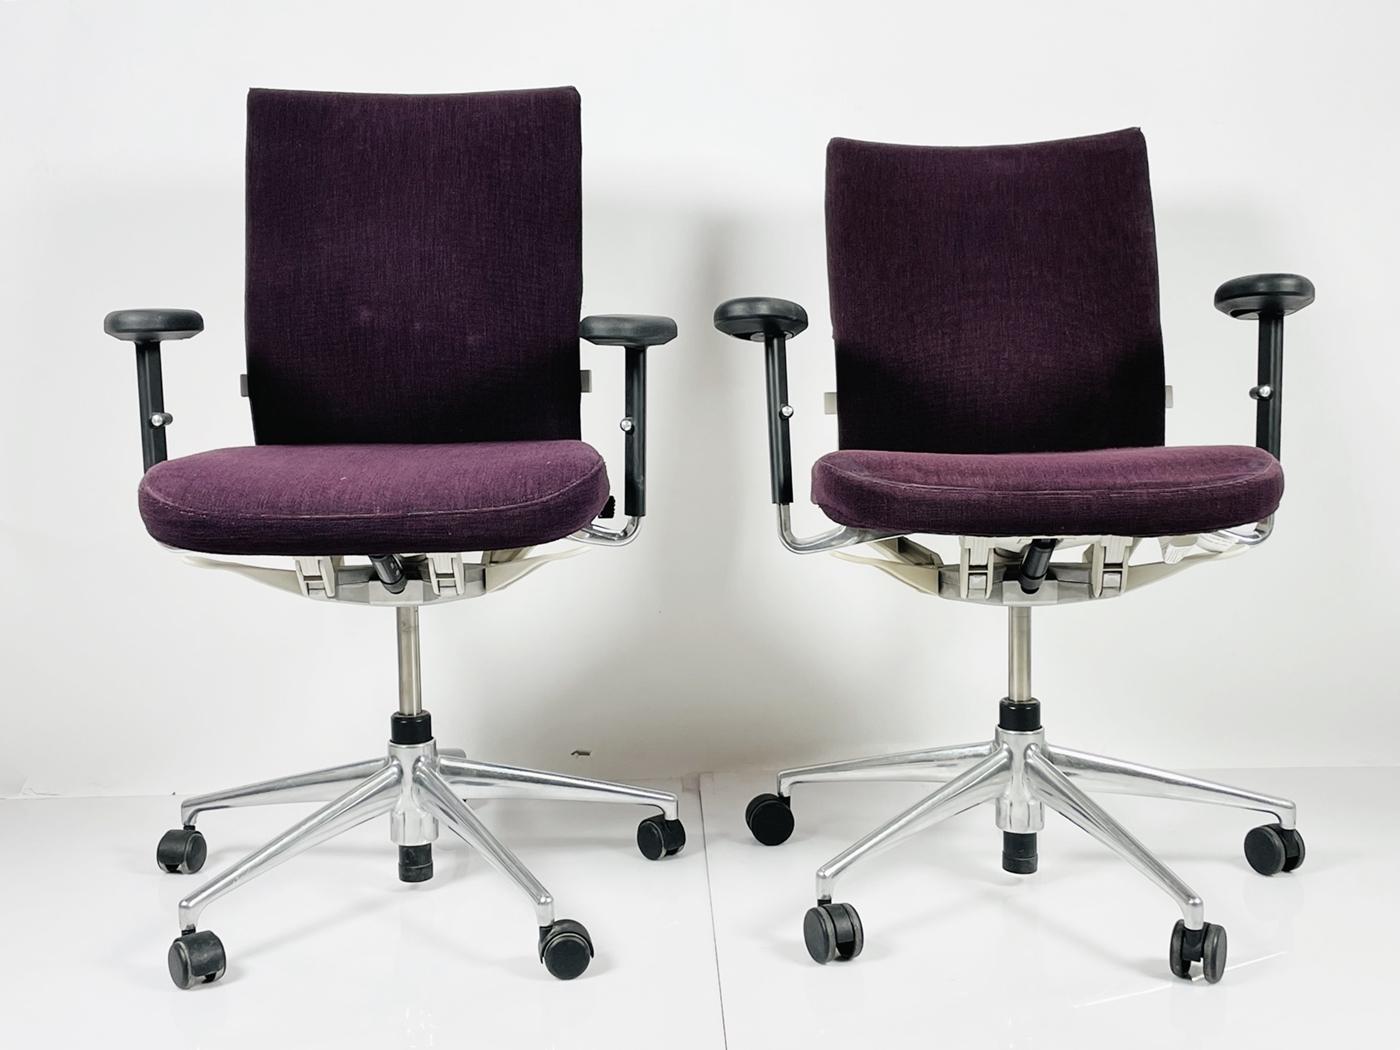 Schönes Paar Büro-/Schreibtischstühle, entworfen von Antonio Citterio, hergestellt von Vitra und Teil der Axess-Kollektion.

Die Stühle und Armlehnen sind höhenverstellbar, die Rückenlehnen lassen sich zurückklappen und sind sehr bequem.

Die Stühle